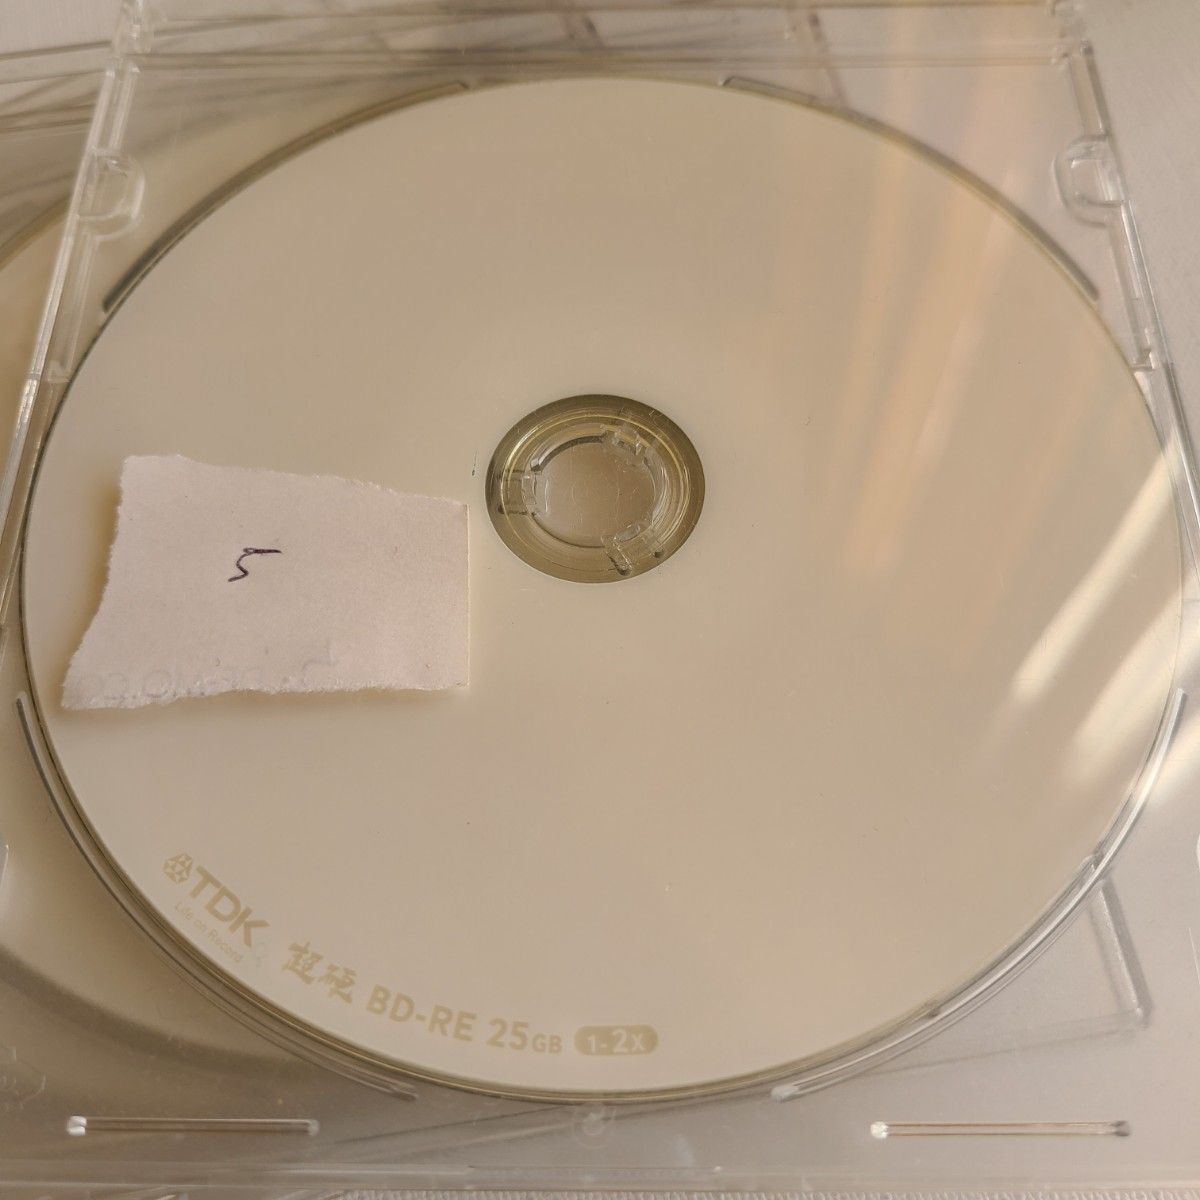 BD-RE 25GB 1-2x 【70枚】2倍速ブルーレイディスク 繰り返し録画用